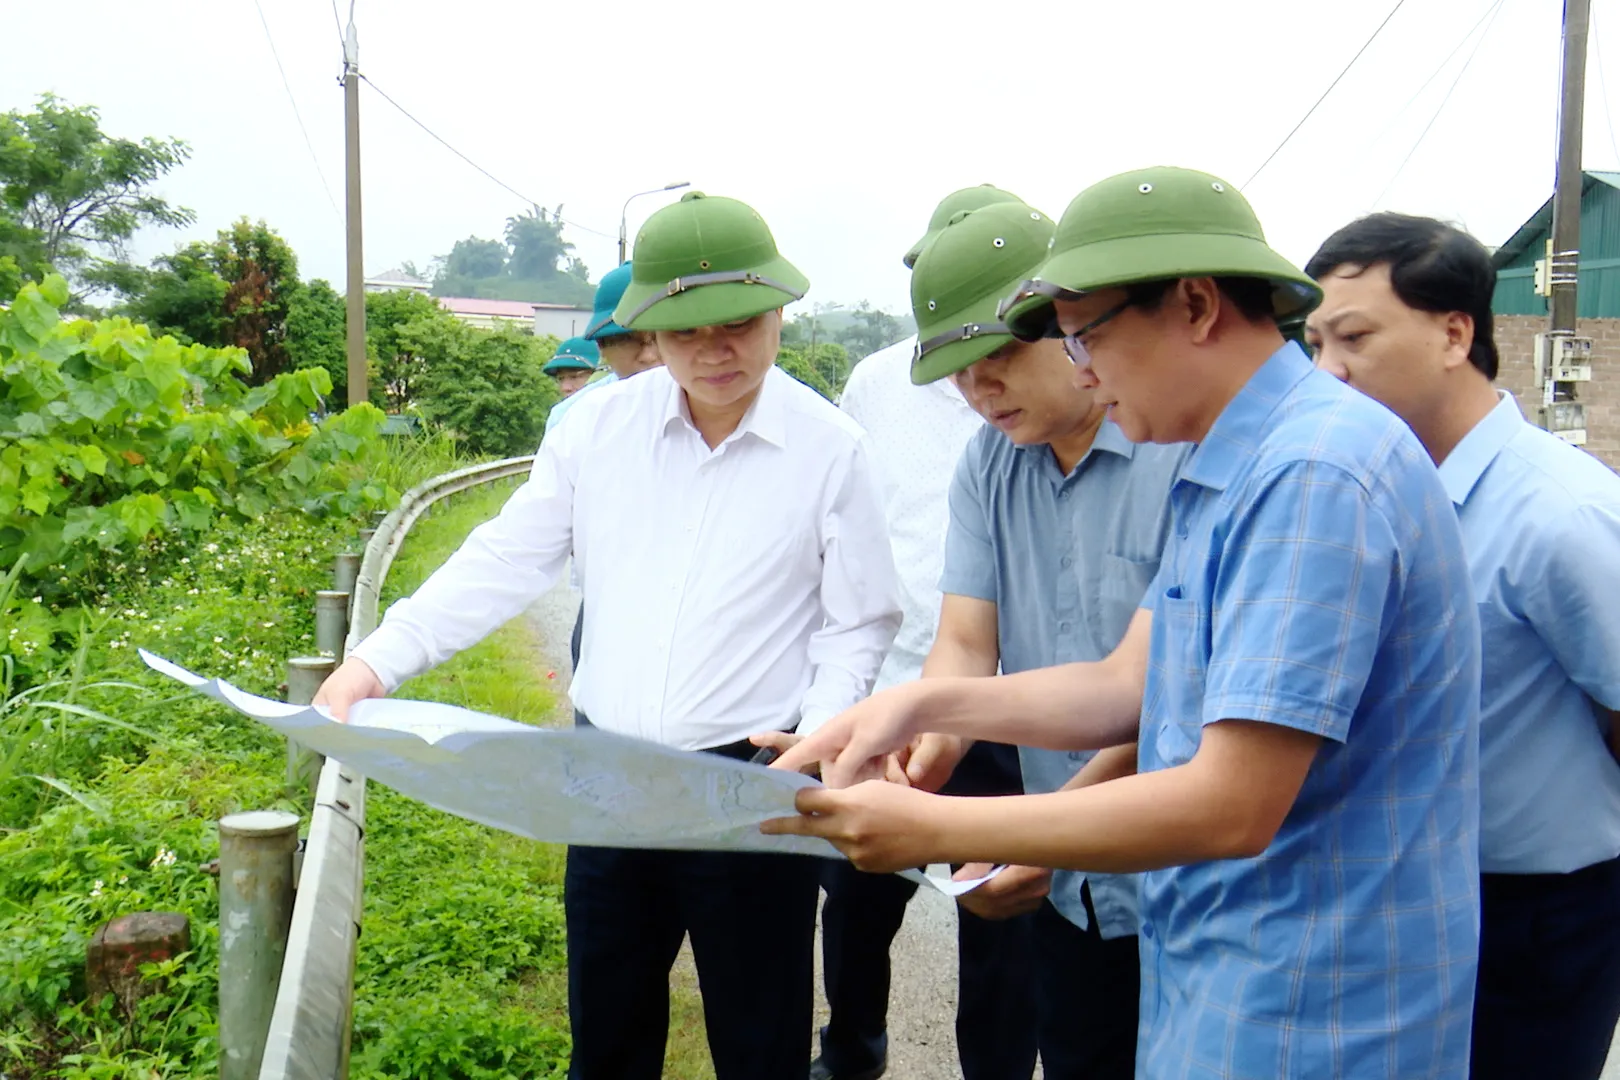  Đồng chí Đặng Ngọc Hậu, Phó Chủ tịch UBND tỉnh, kiểm tra thực địa các điểm dự kiến xây dựng khu TĐC của dự án đường cao tốc Hòa Bình - Mộc Châu